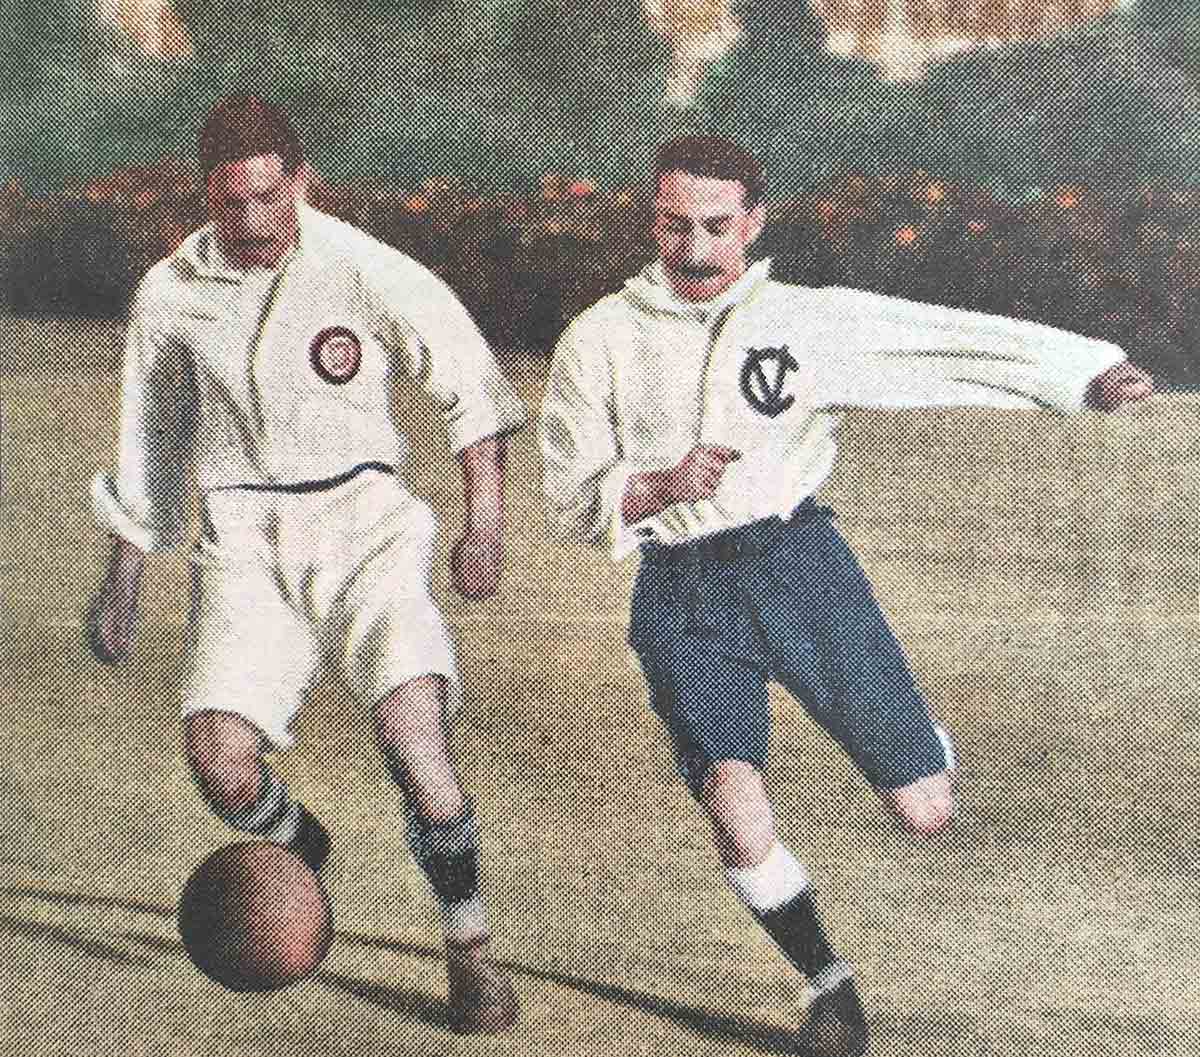 Copa 1907